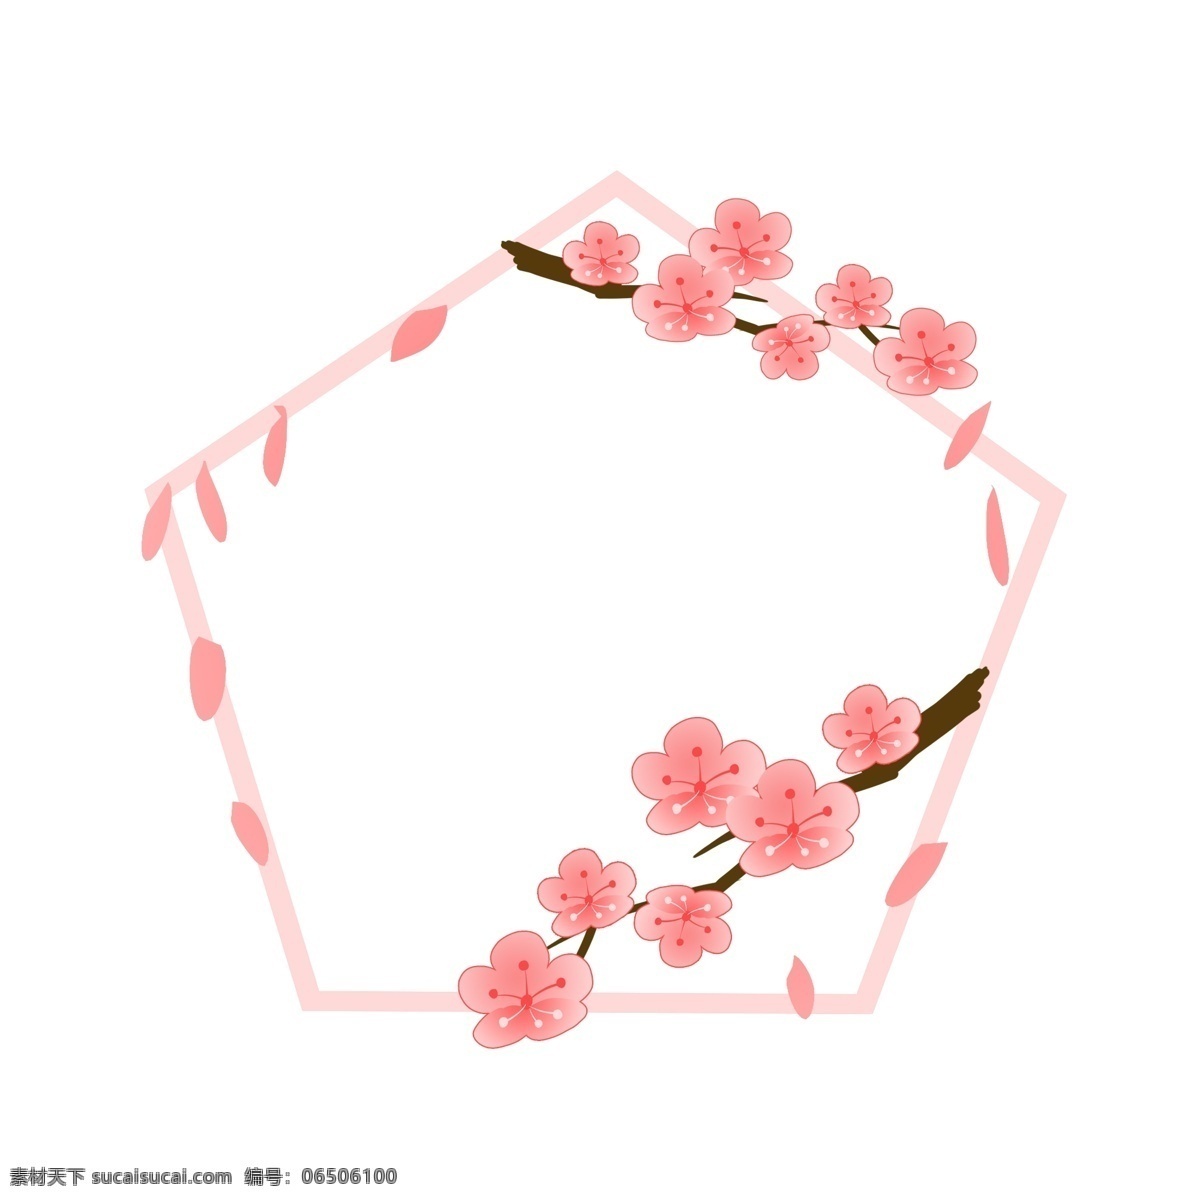 绽放 花朵 春季 框 插画 绽放的花朵 卡通插画 春天 春季边框 春季框 框架 五边形边框 粉色的边框